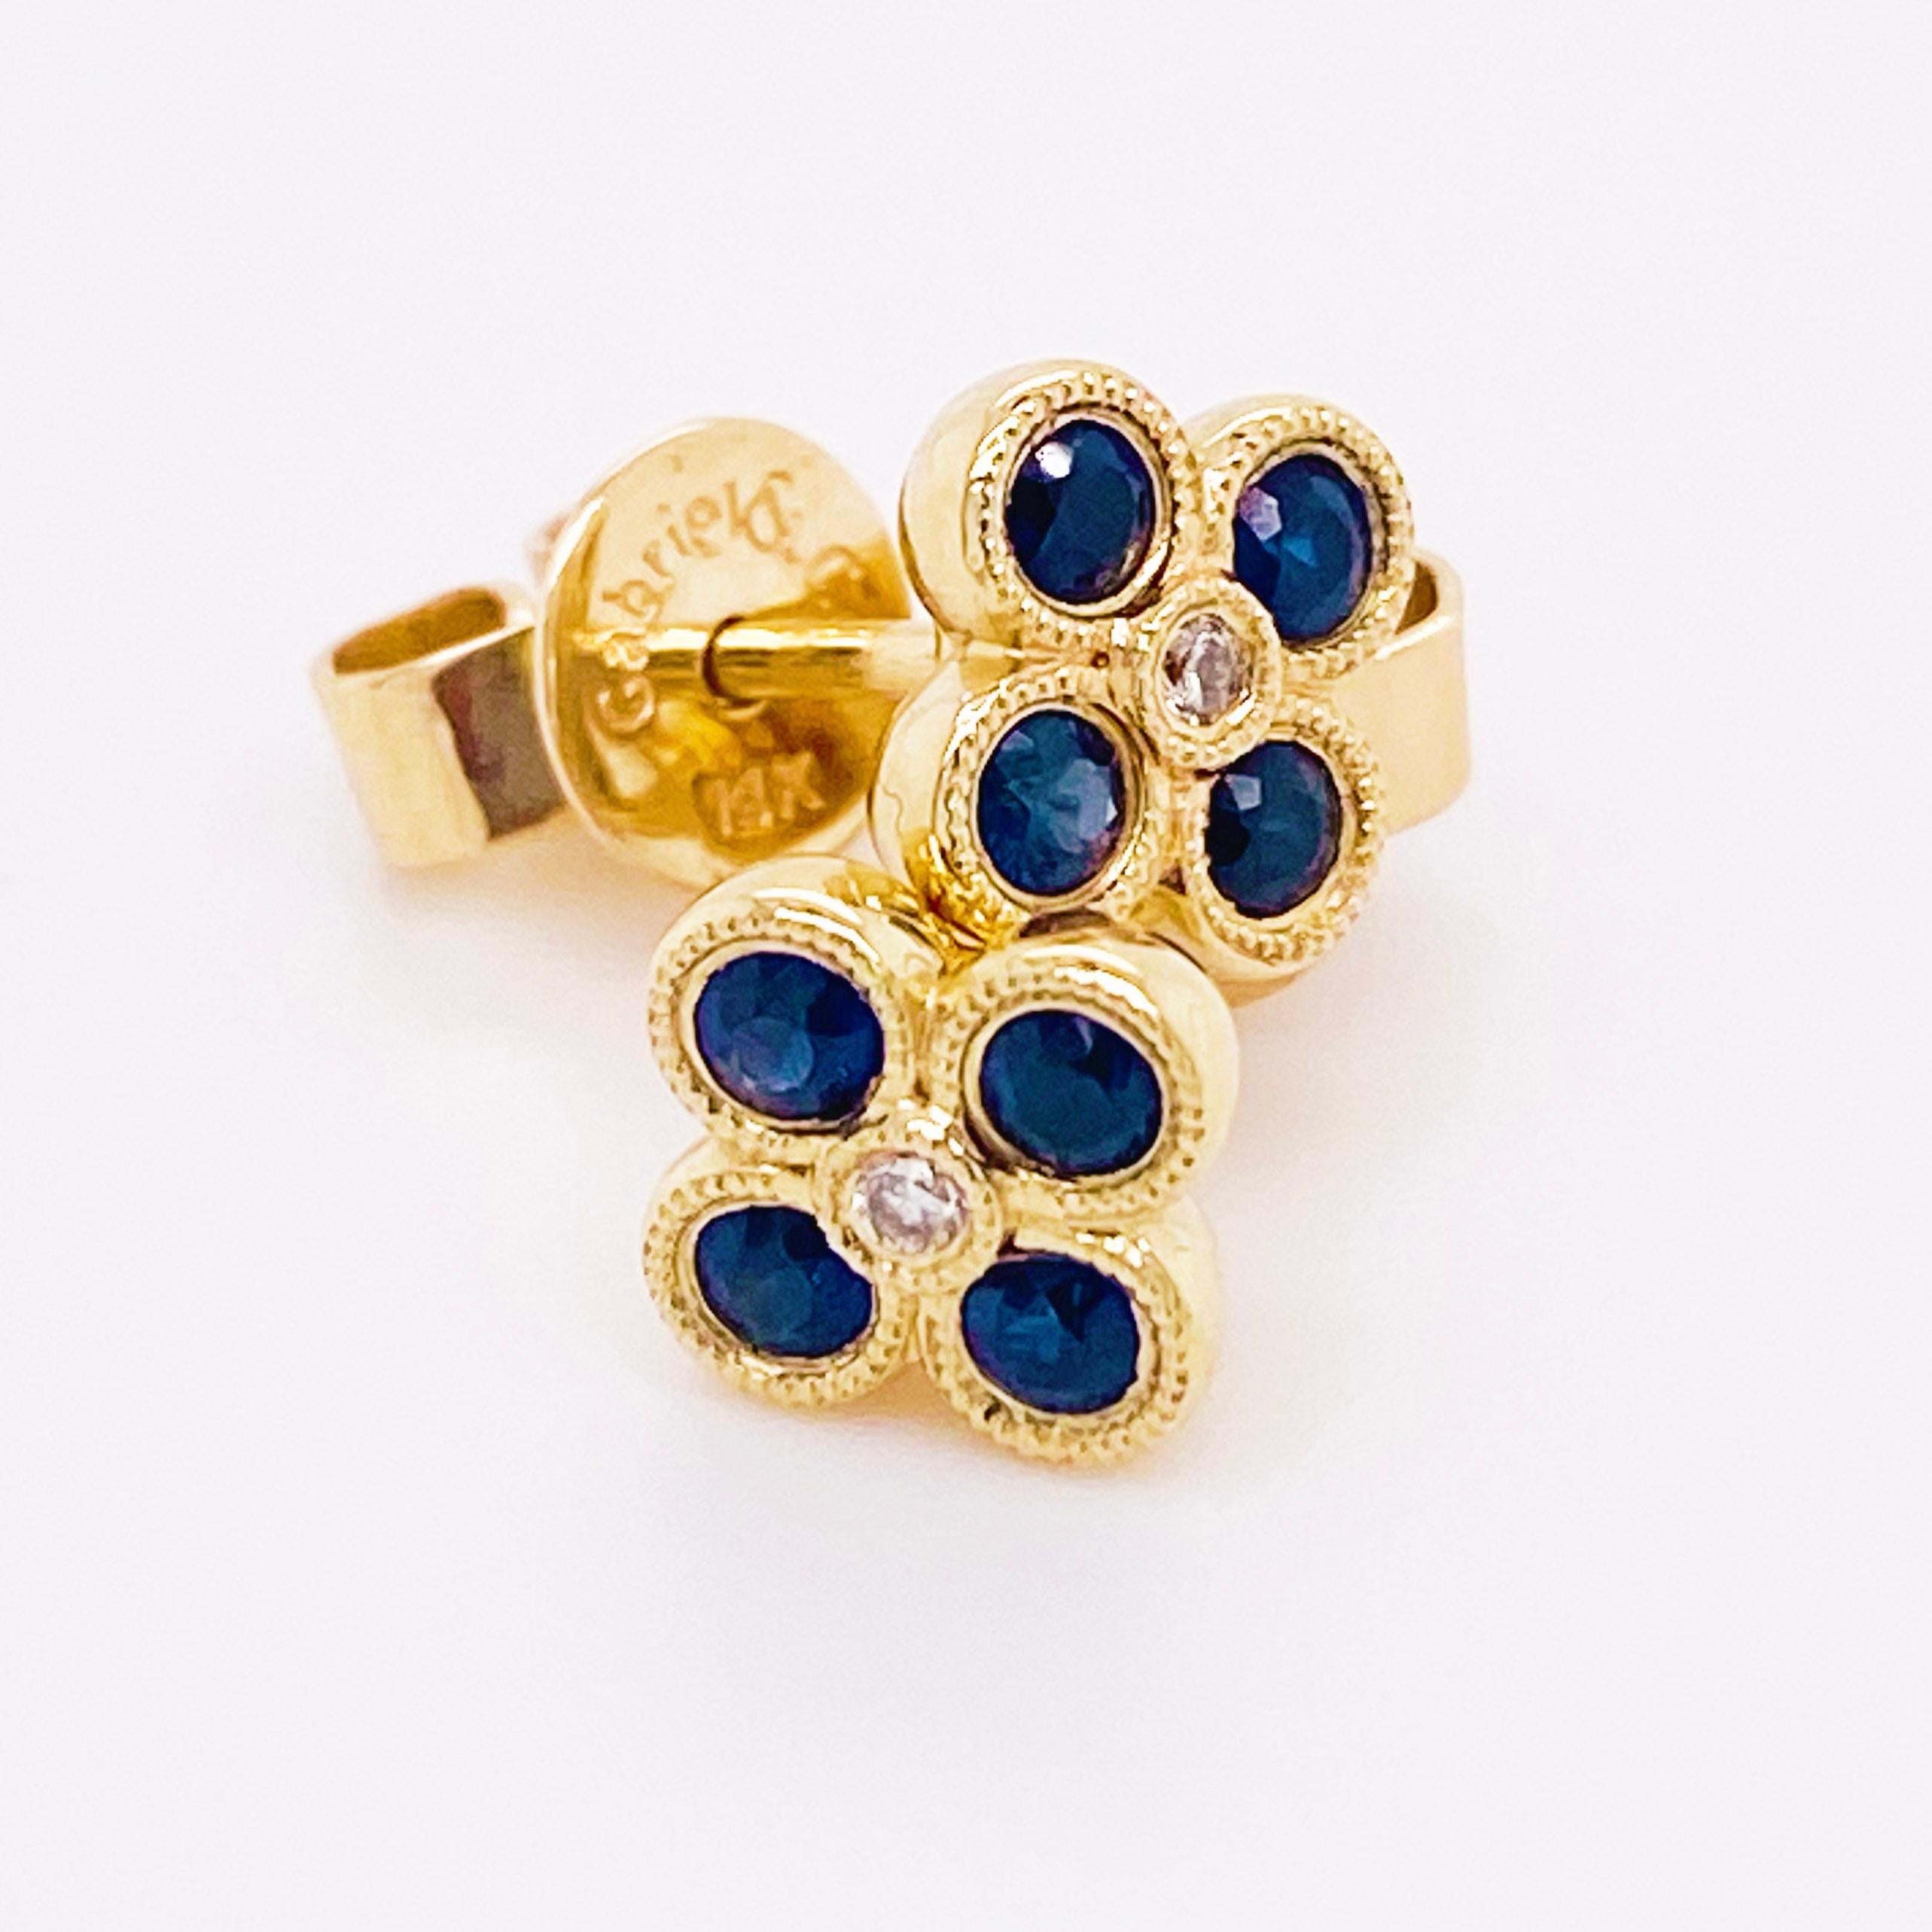 Modern Diamond Sapphire Earrings 14 Karat Yellow Gold Blue Flower Studs Ceylon Sapphire